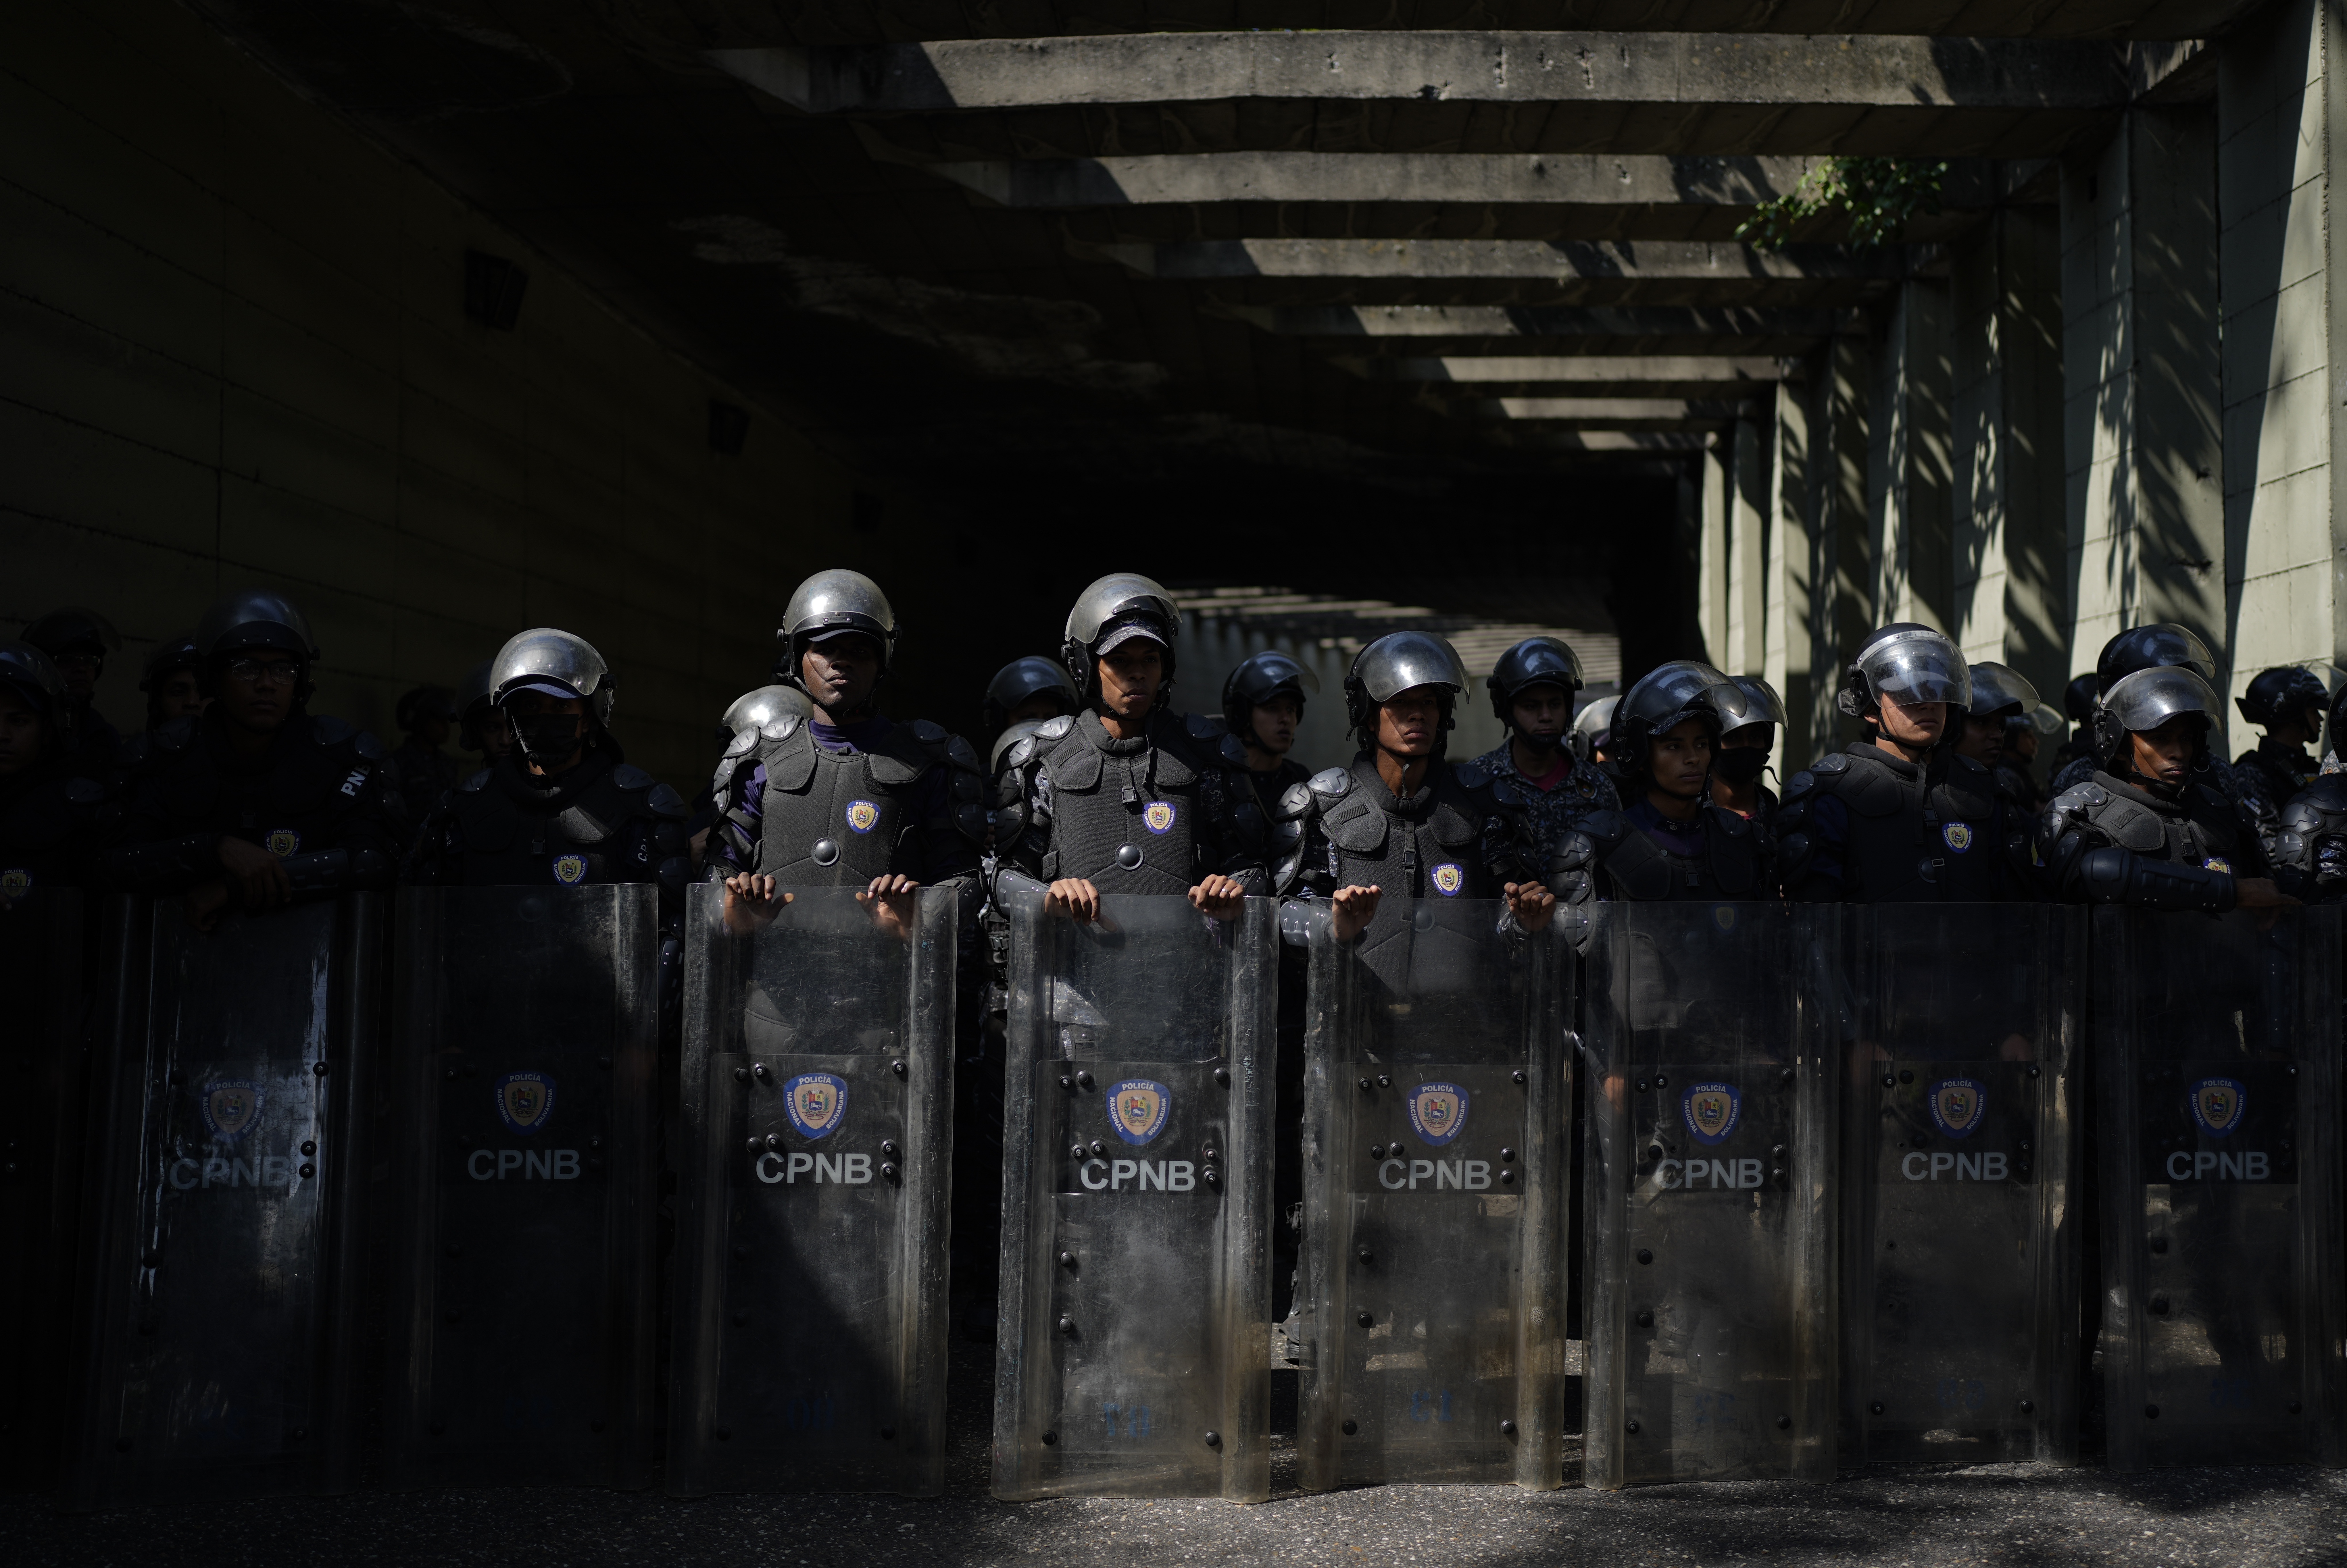 La policía hace guardia en los límites de una marcha de profesores, funcionarios y pensionistas para pedir mayores salarios y pensiones, así como el pago total de sus beneficios, en Caracas, Venezuela, el lunes 16 de enero de 2023 (AP Foto/Ariana Cubillos)